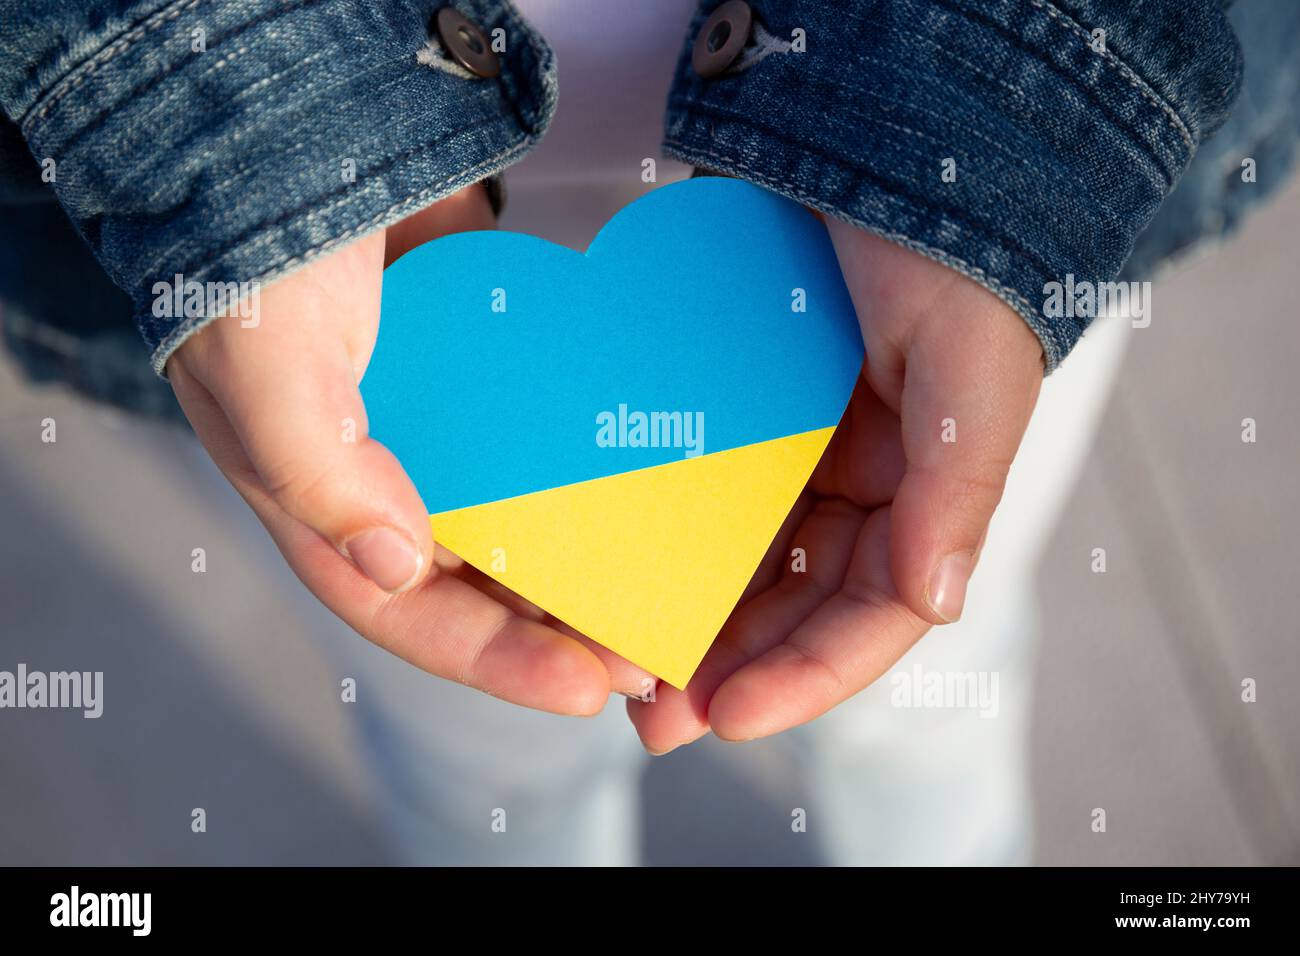 Gros plan des mains d'un petit enfant tenant un coeur aux couleurs du drapeau ukrainien montrant le soutien et la solidarité. Protestation contre l'invasion russe Banque D'Images